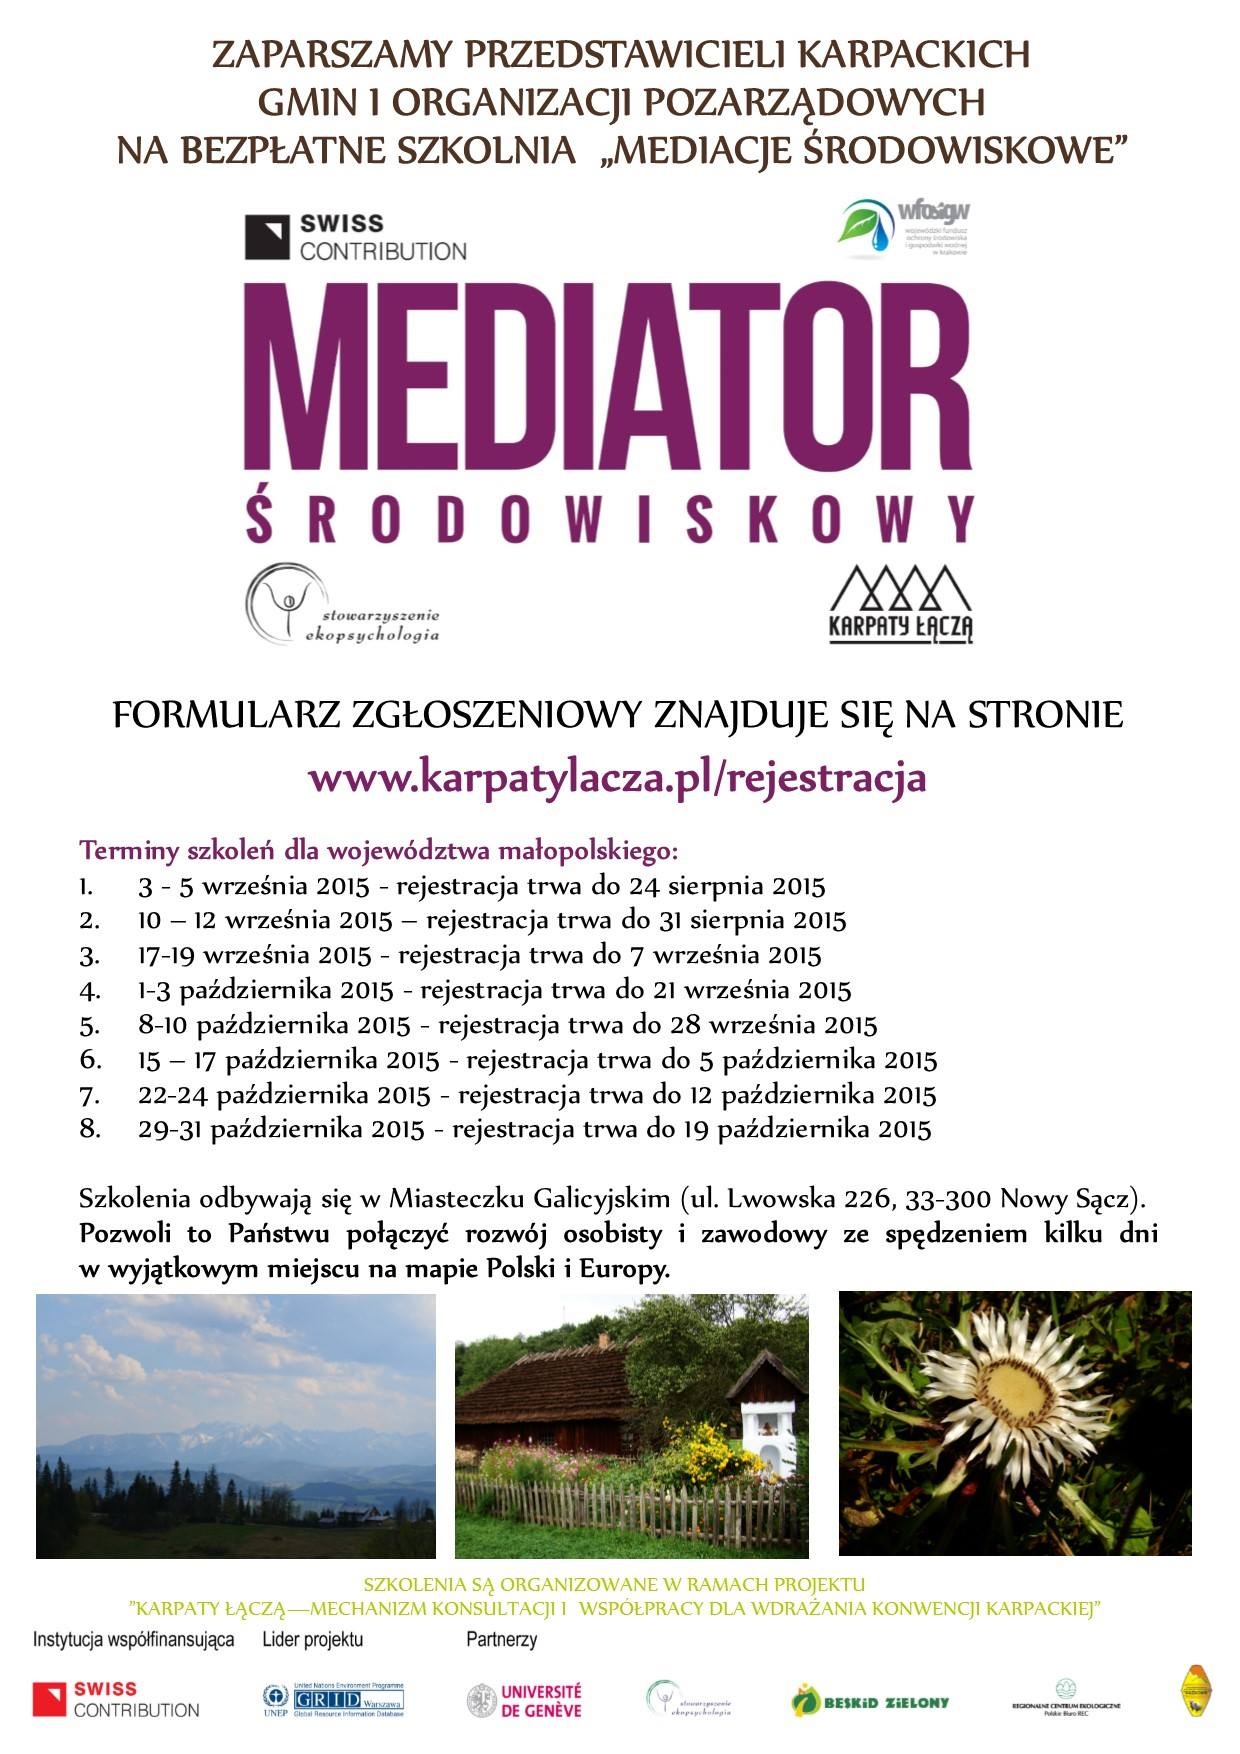 mediator-srodowiskowy_szkolenia_plakat.jpg